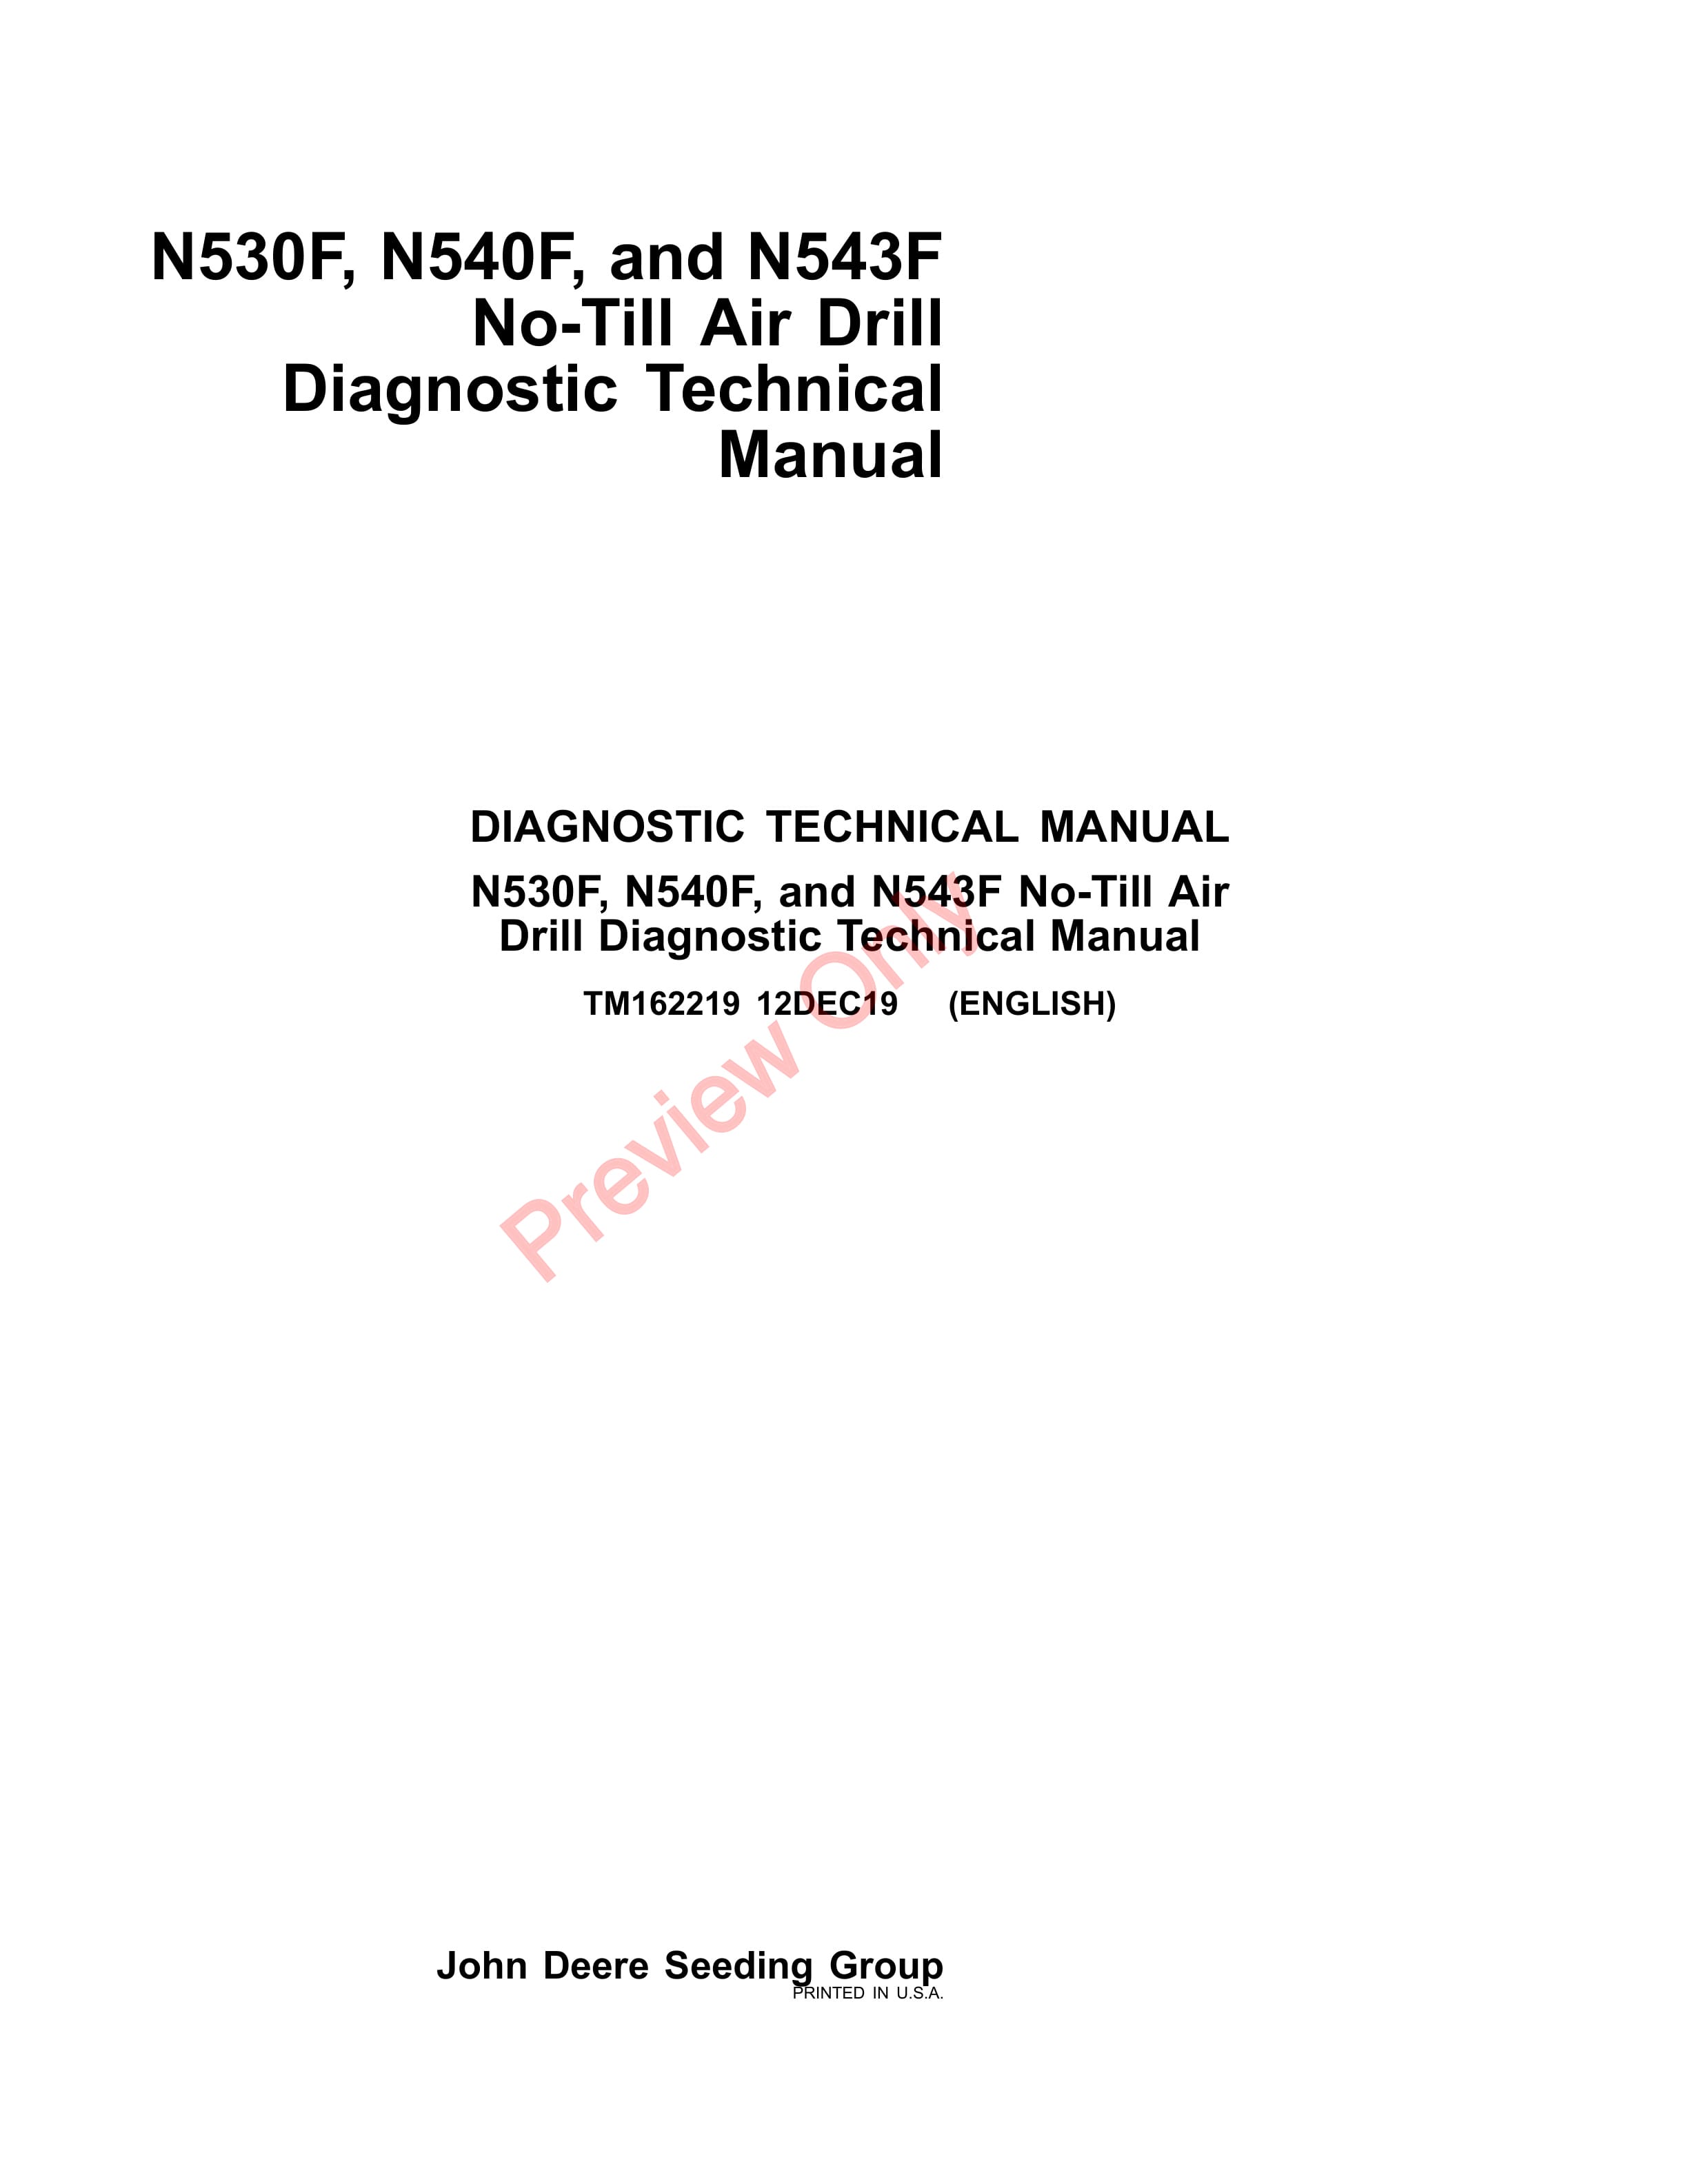 John Deere N530F N540F and N543F No Till Air Drill Diagnostic Technical Manual TM162219 12DEC19 1